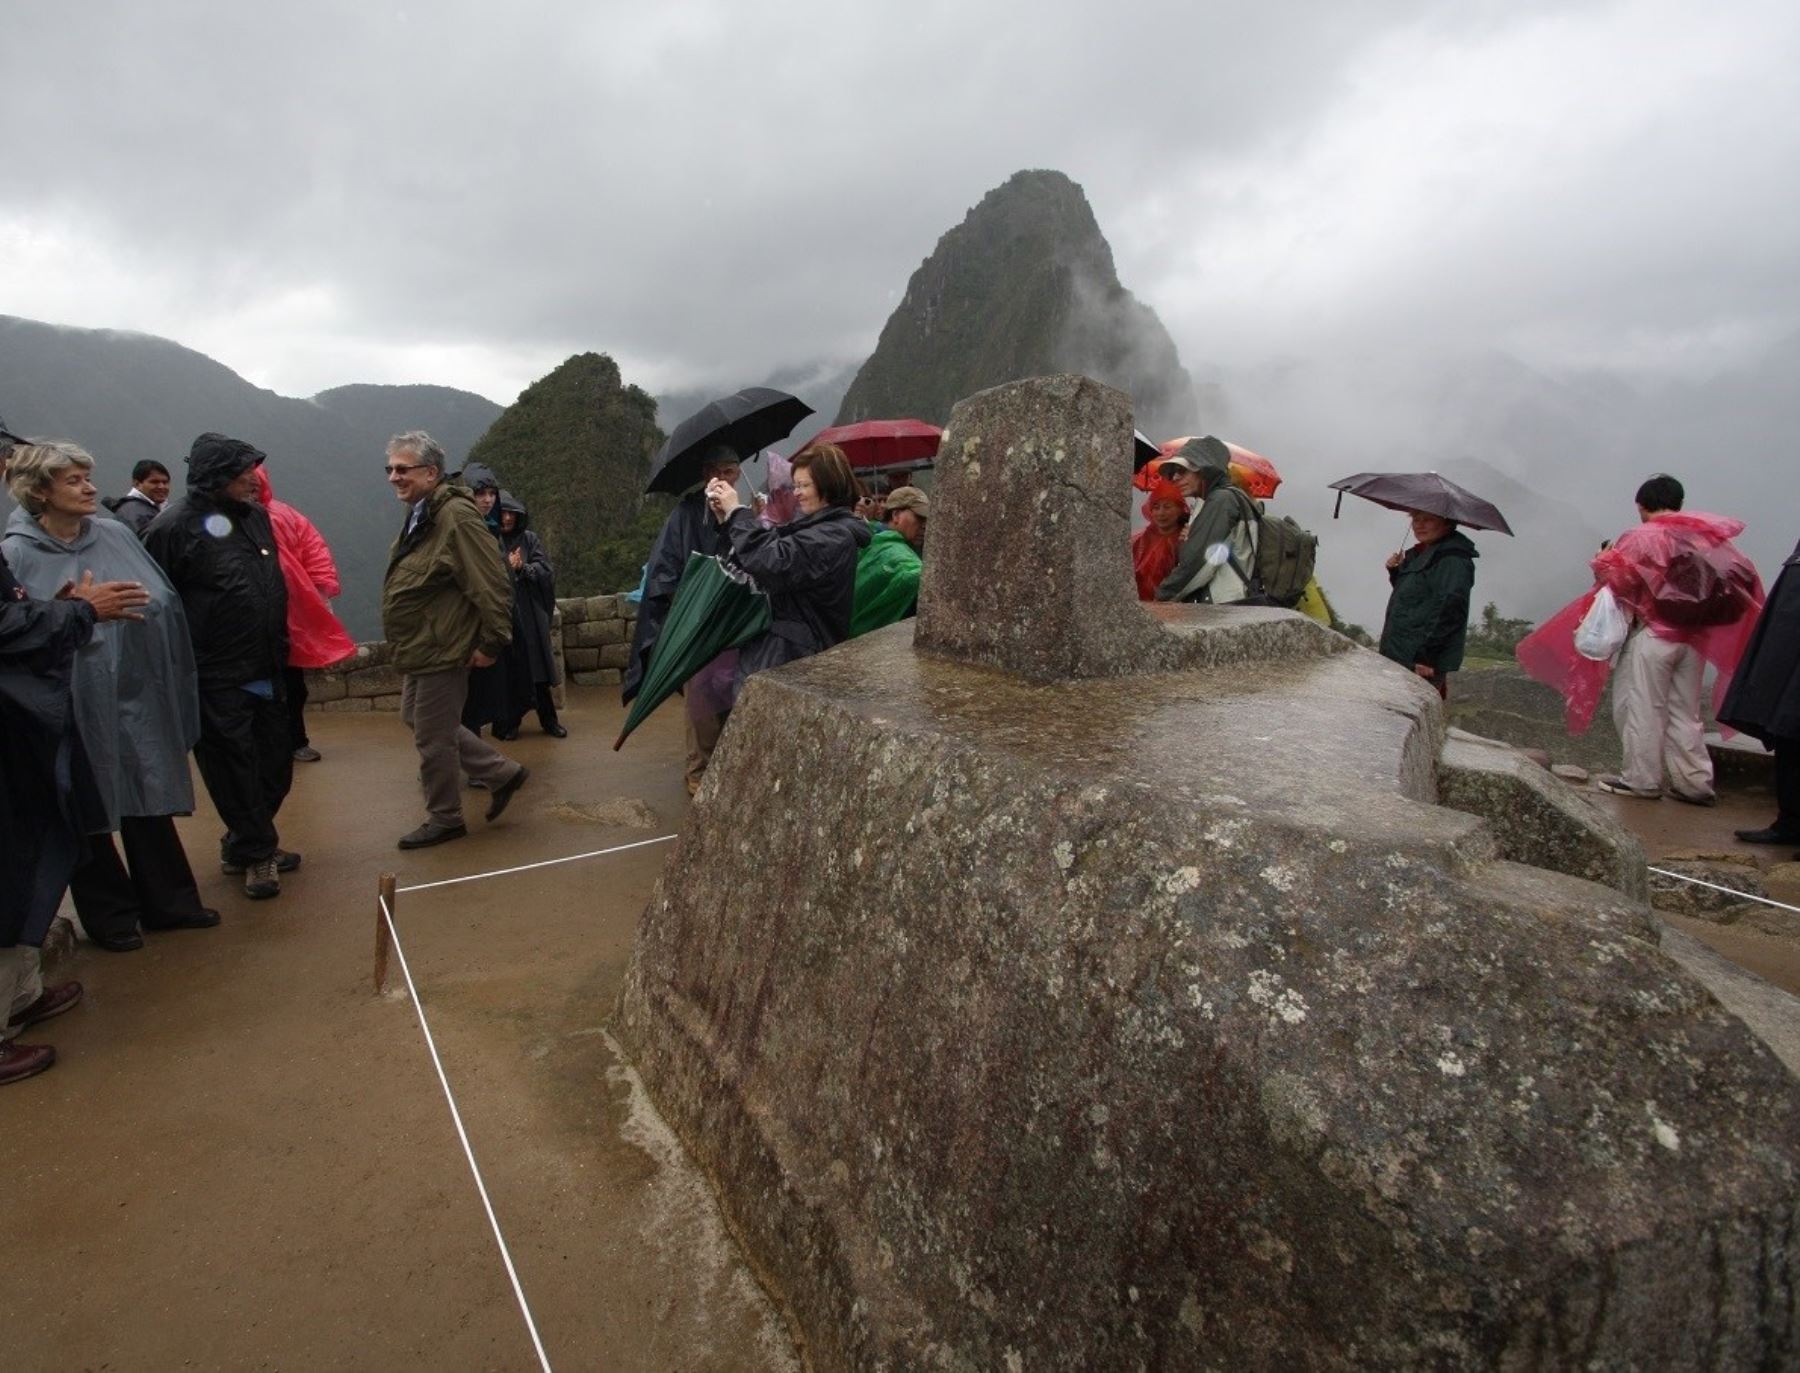 El Intihuatana, una piedra tallada y considerada el reloj solar inca, ubicada en la ciudadela de Machu Picchu, será cerrado al público temporalmente, debido a las evidencias de desgaste, afirma la Dirección de Cultura de Cusco. Foto: Percy Hurtado